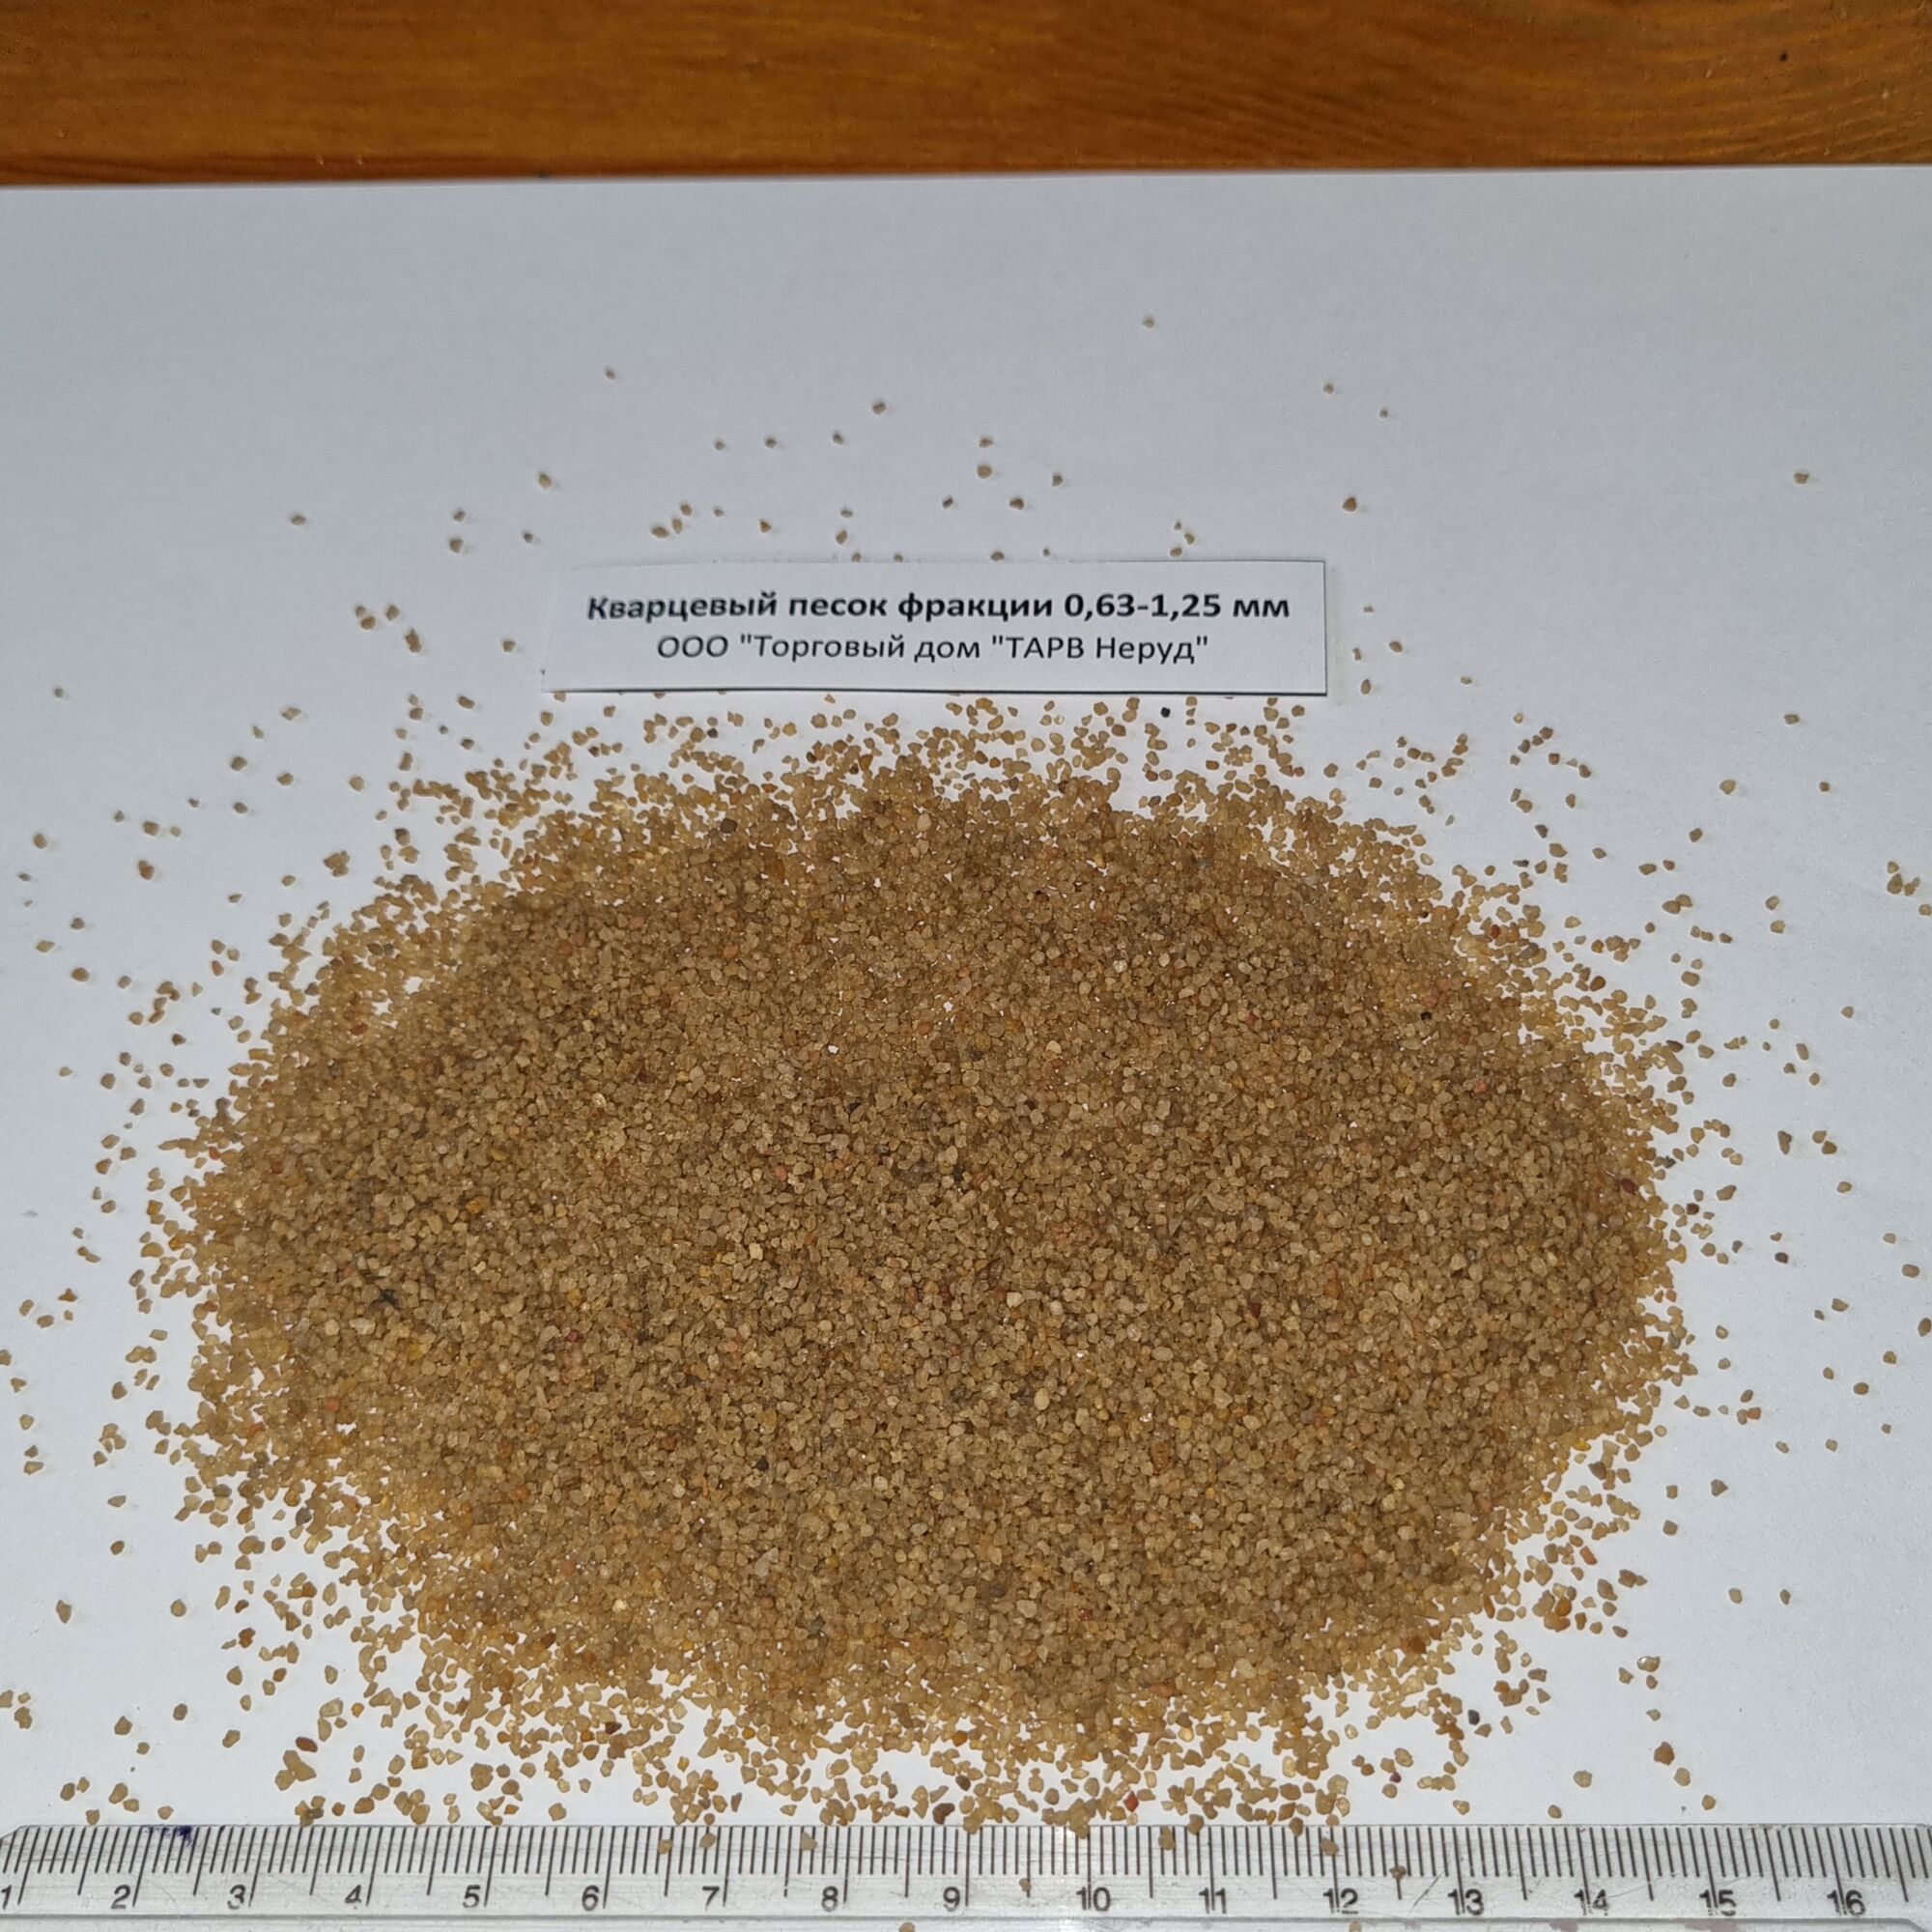 Кварцевый песок фракция 0,63-1,25 мм в мешках по 25 кг самовывоз или доставка из Воронежа (не включена)